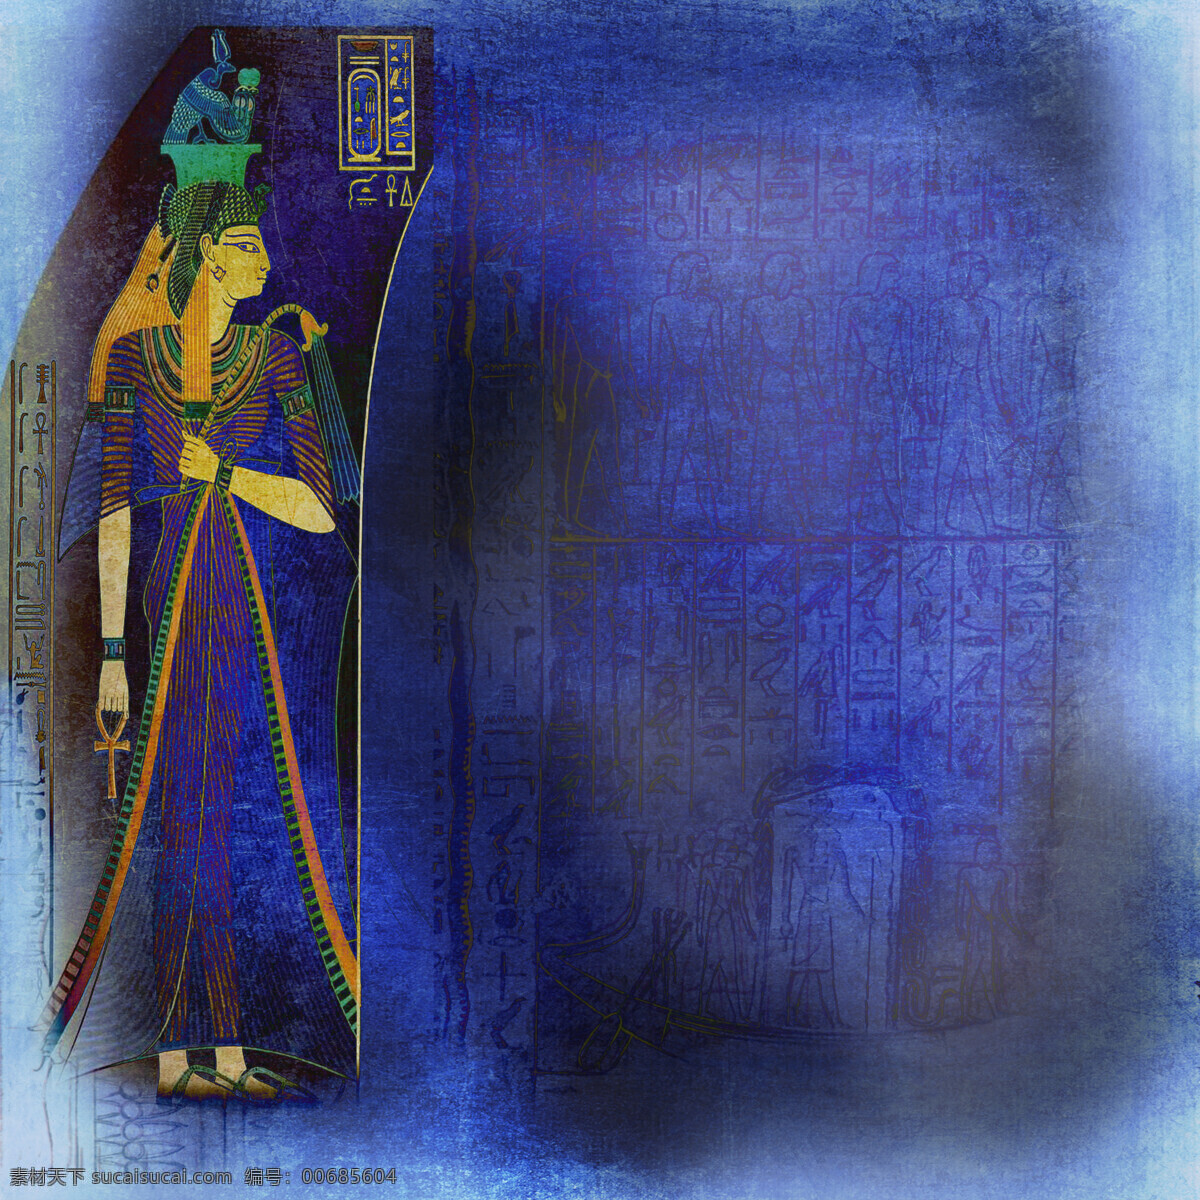 埃及 女性 卡通埃及女性 埃及传统图案 埃及壁画 古埃及文化 传统图案 文化艺术